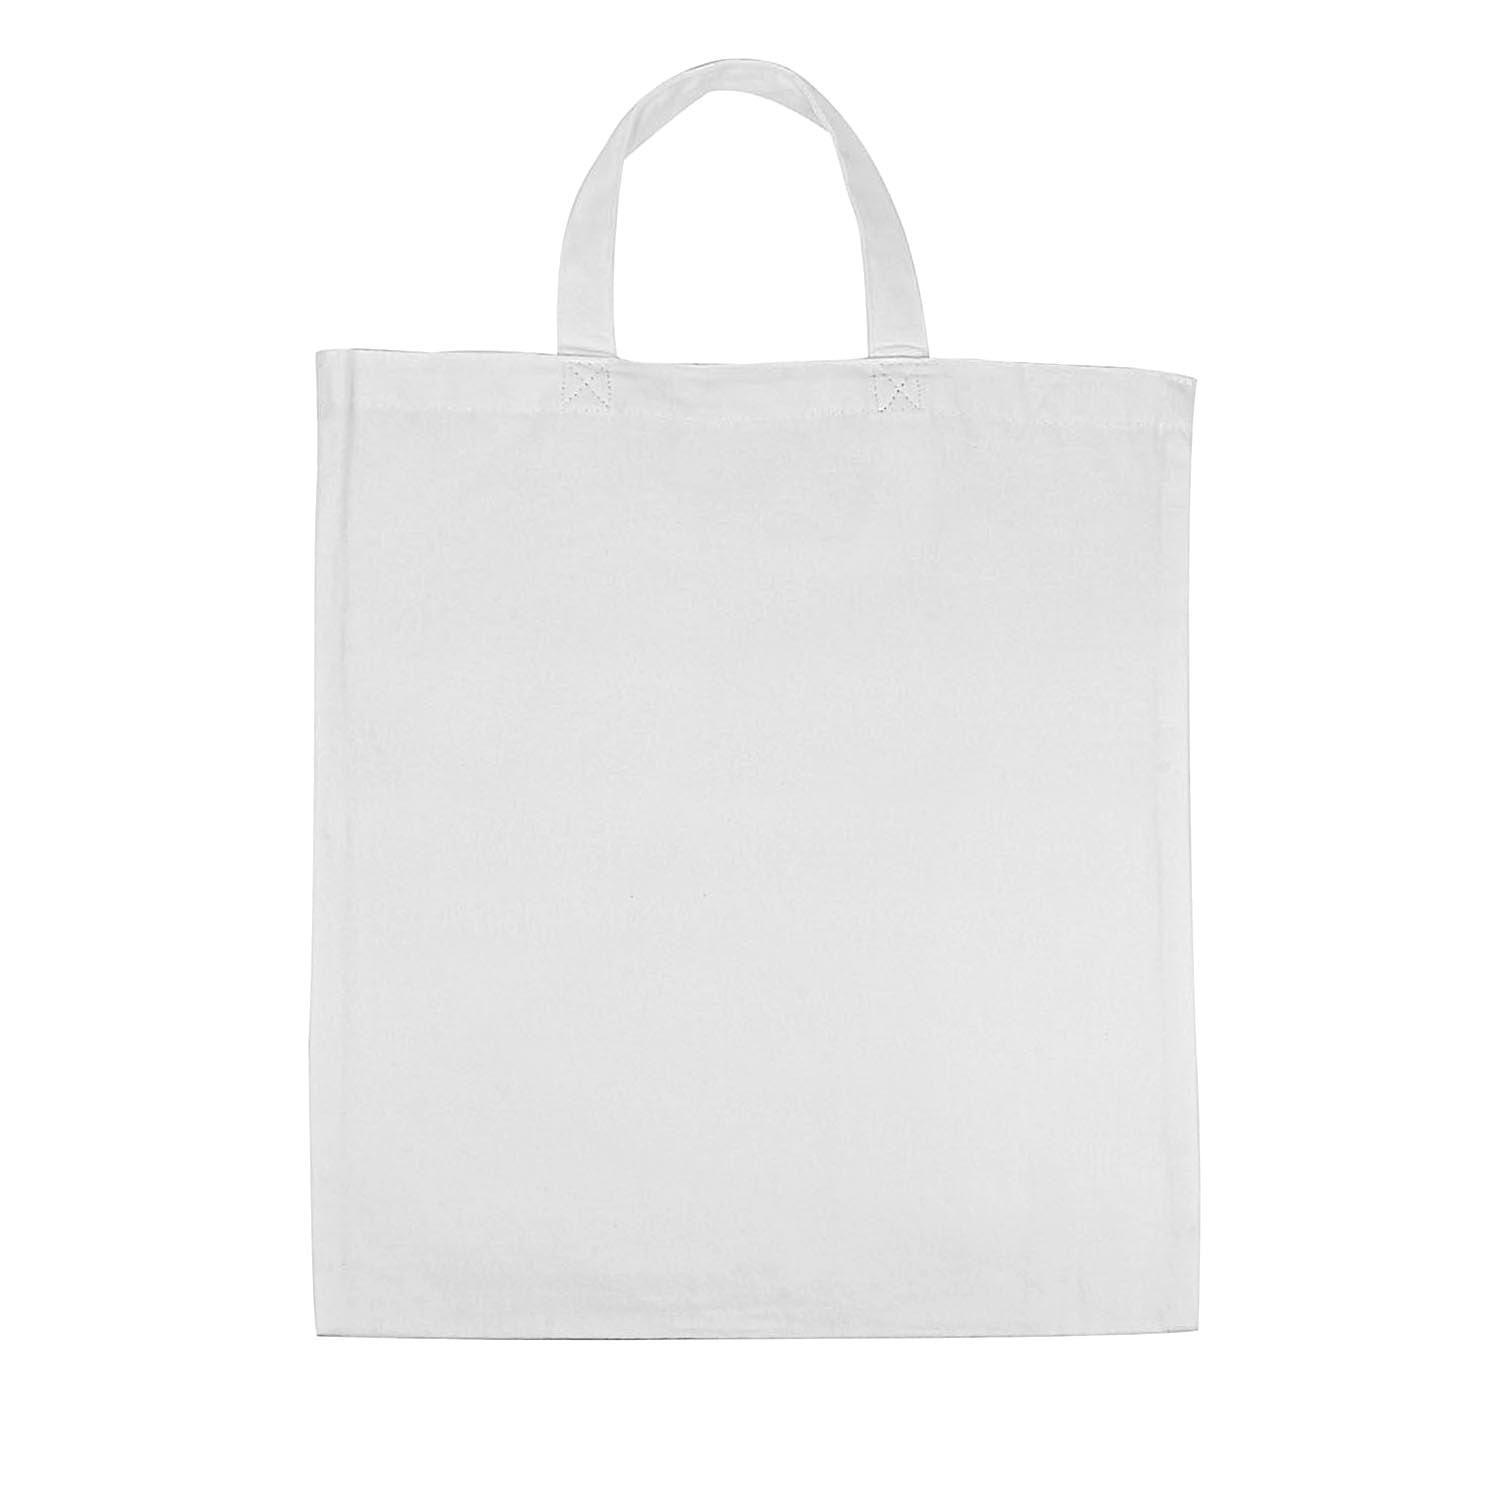 White Plain Canvas Bag easy to carry bag - No Plastic Shop